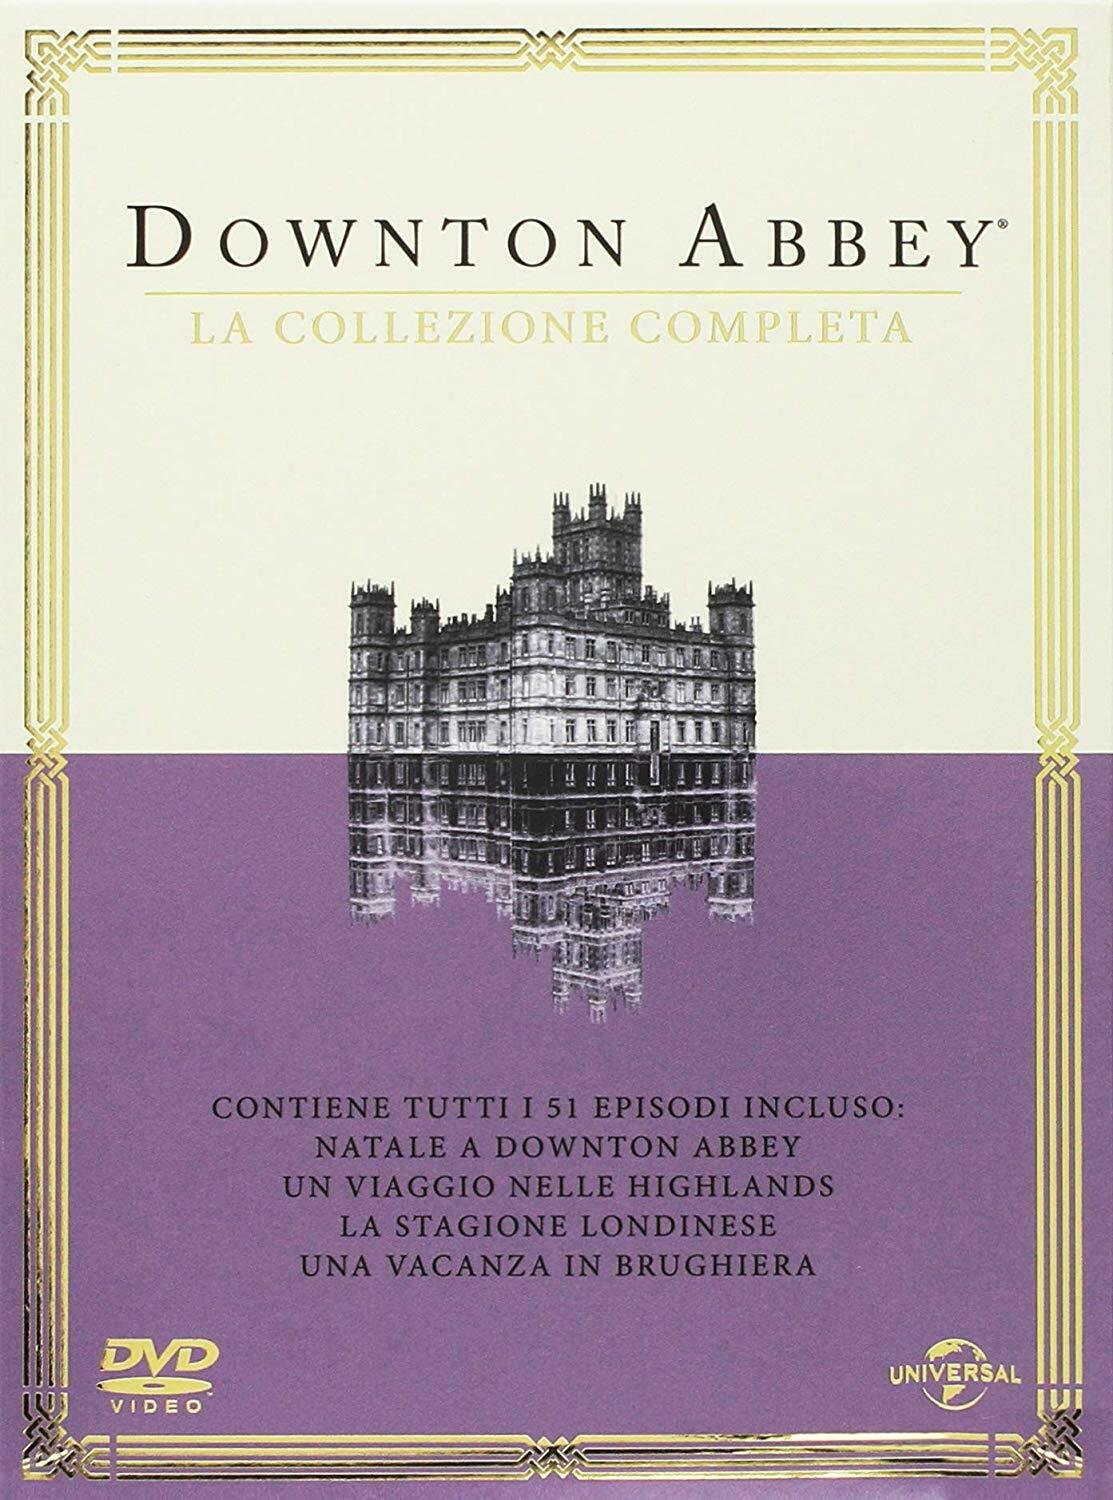 Le 6 stagioni della serie TV Downton Abbey in un cofanetto DVD